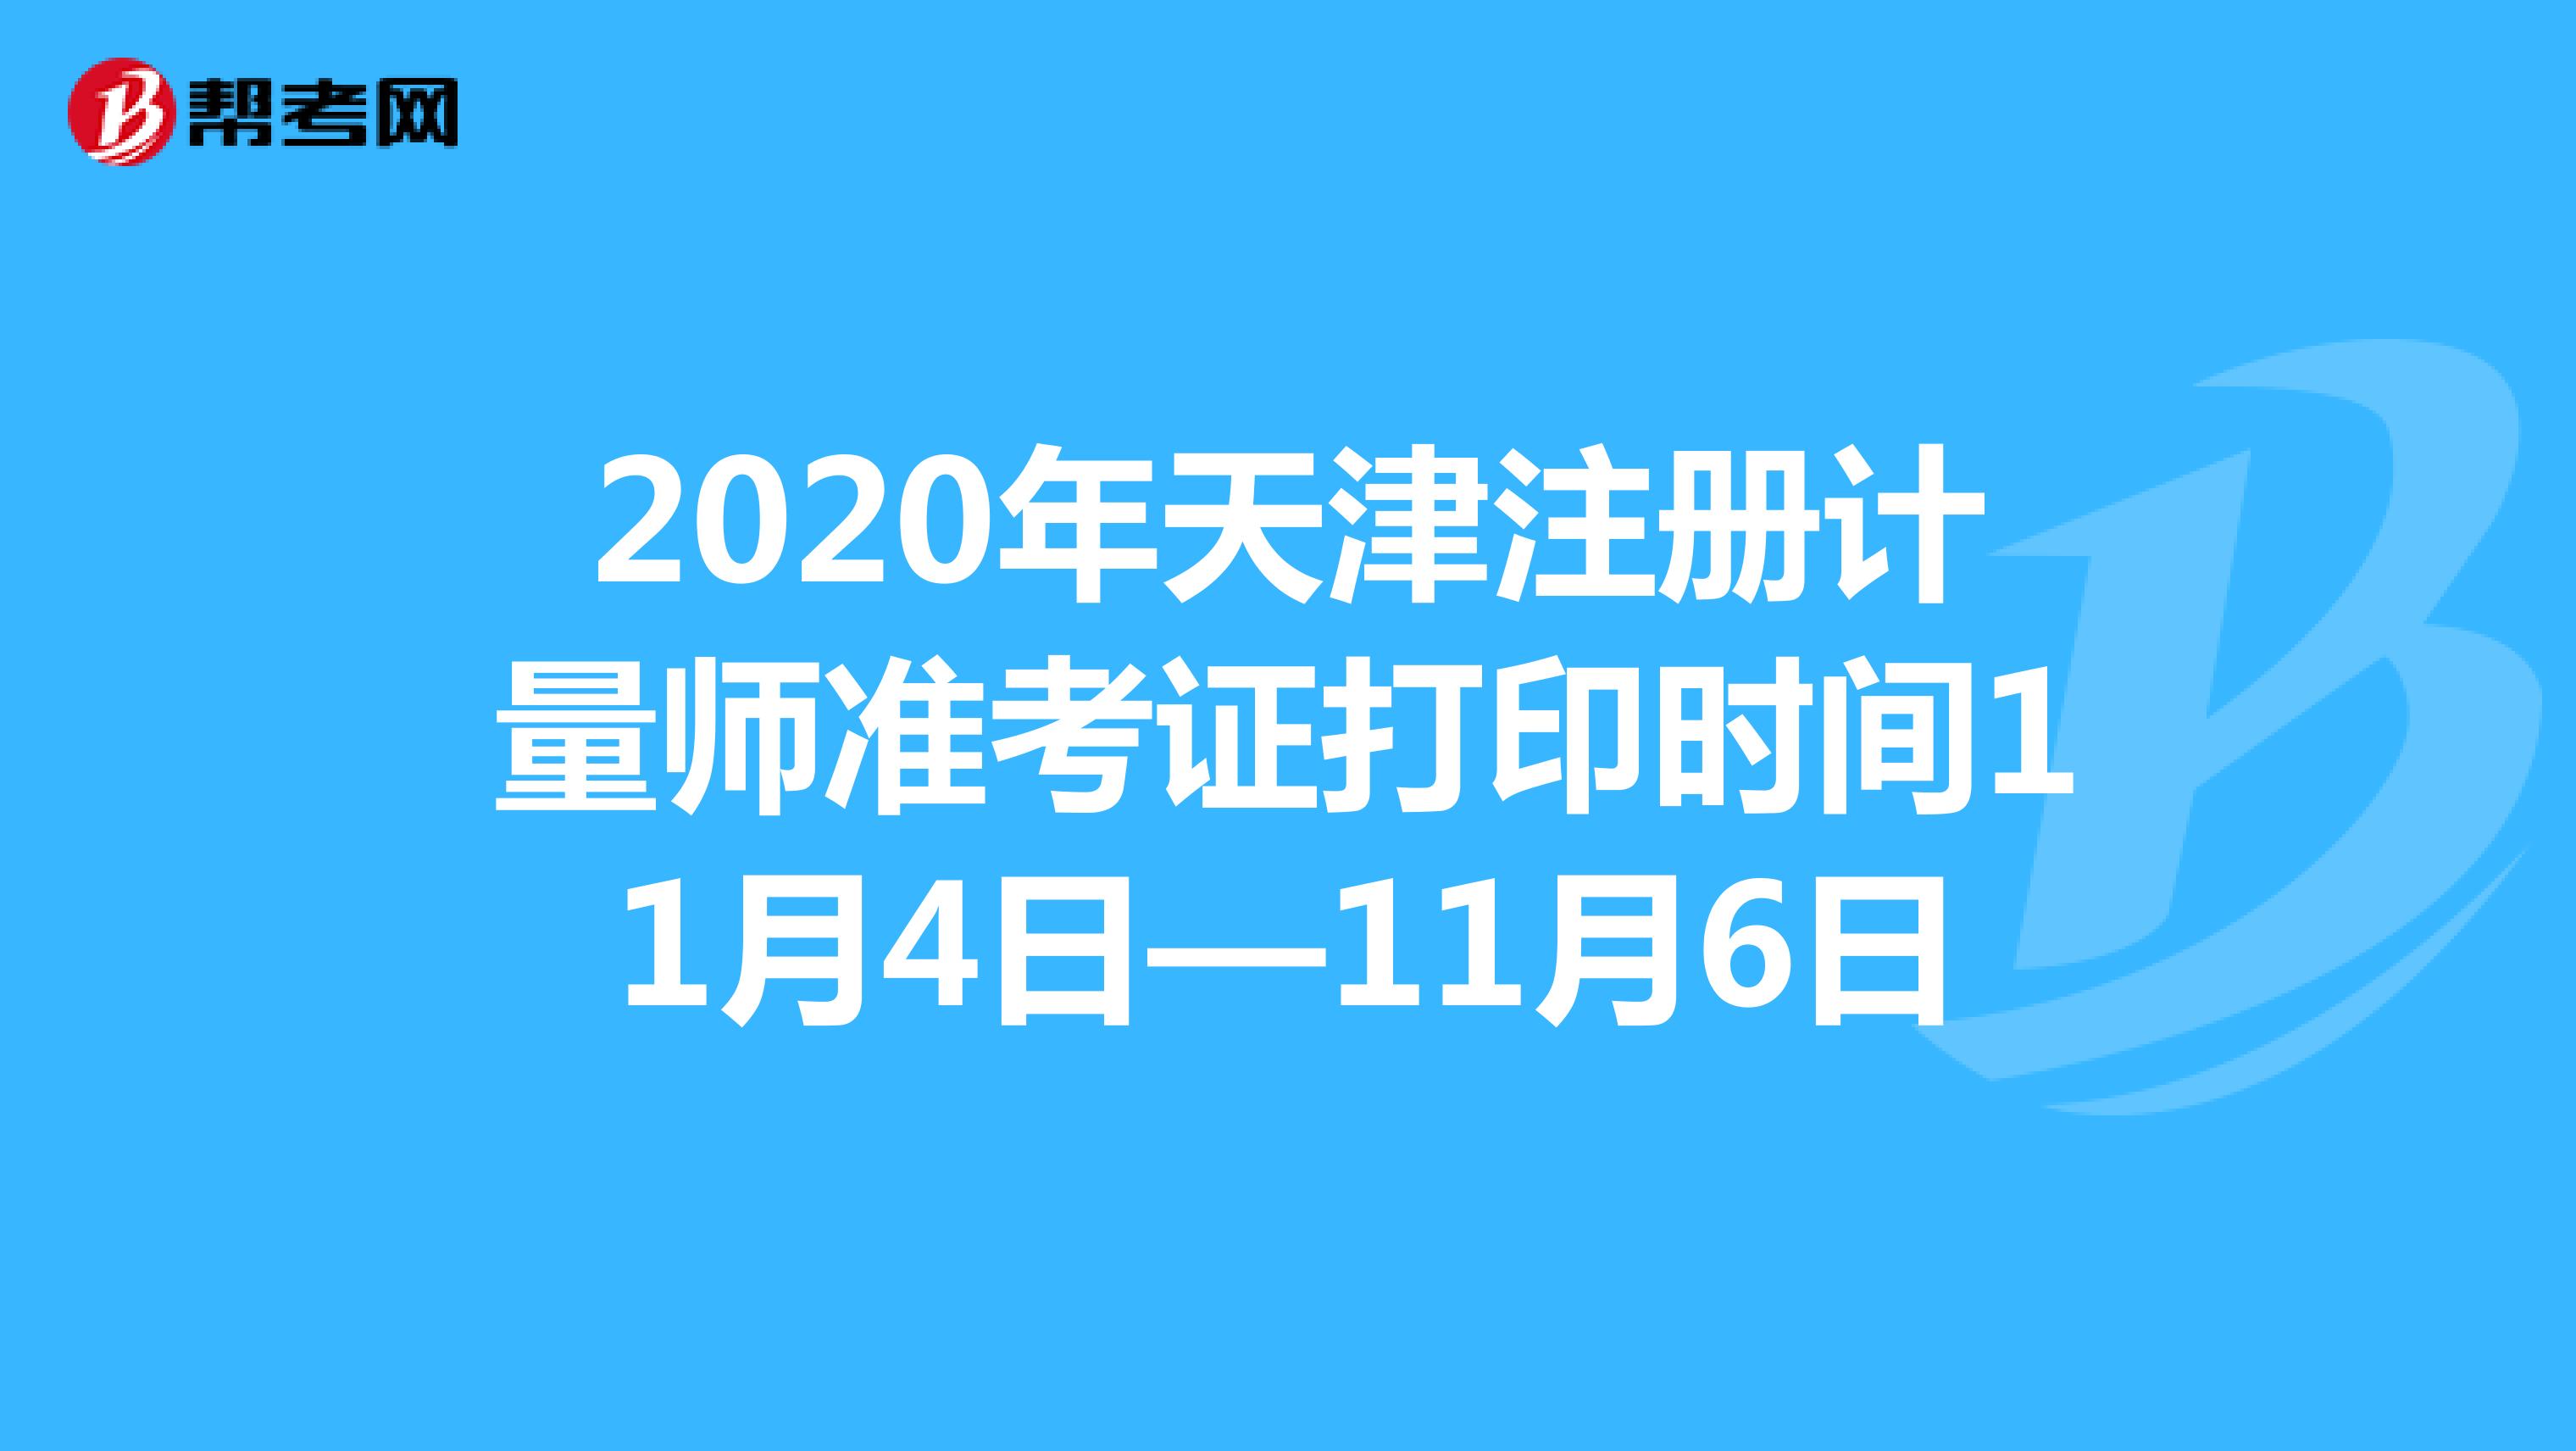 2020年天津注册计量师准考证打印时间11月4日—11月6日